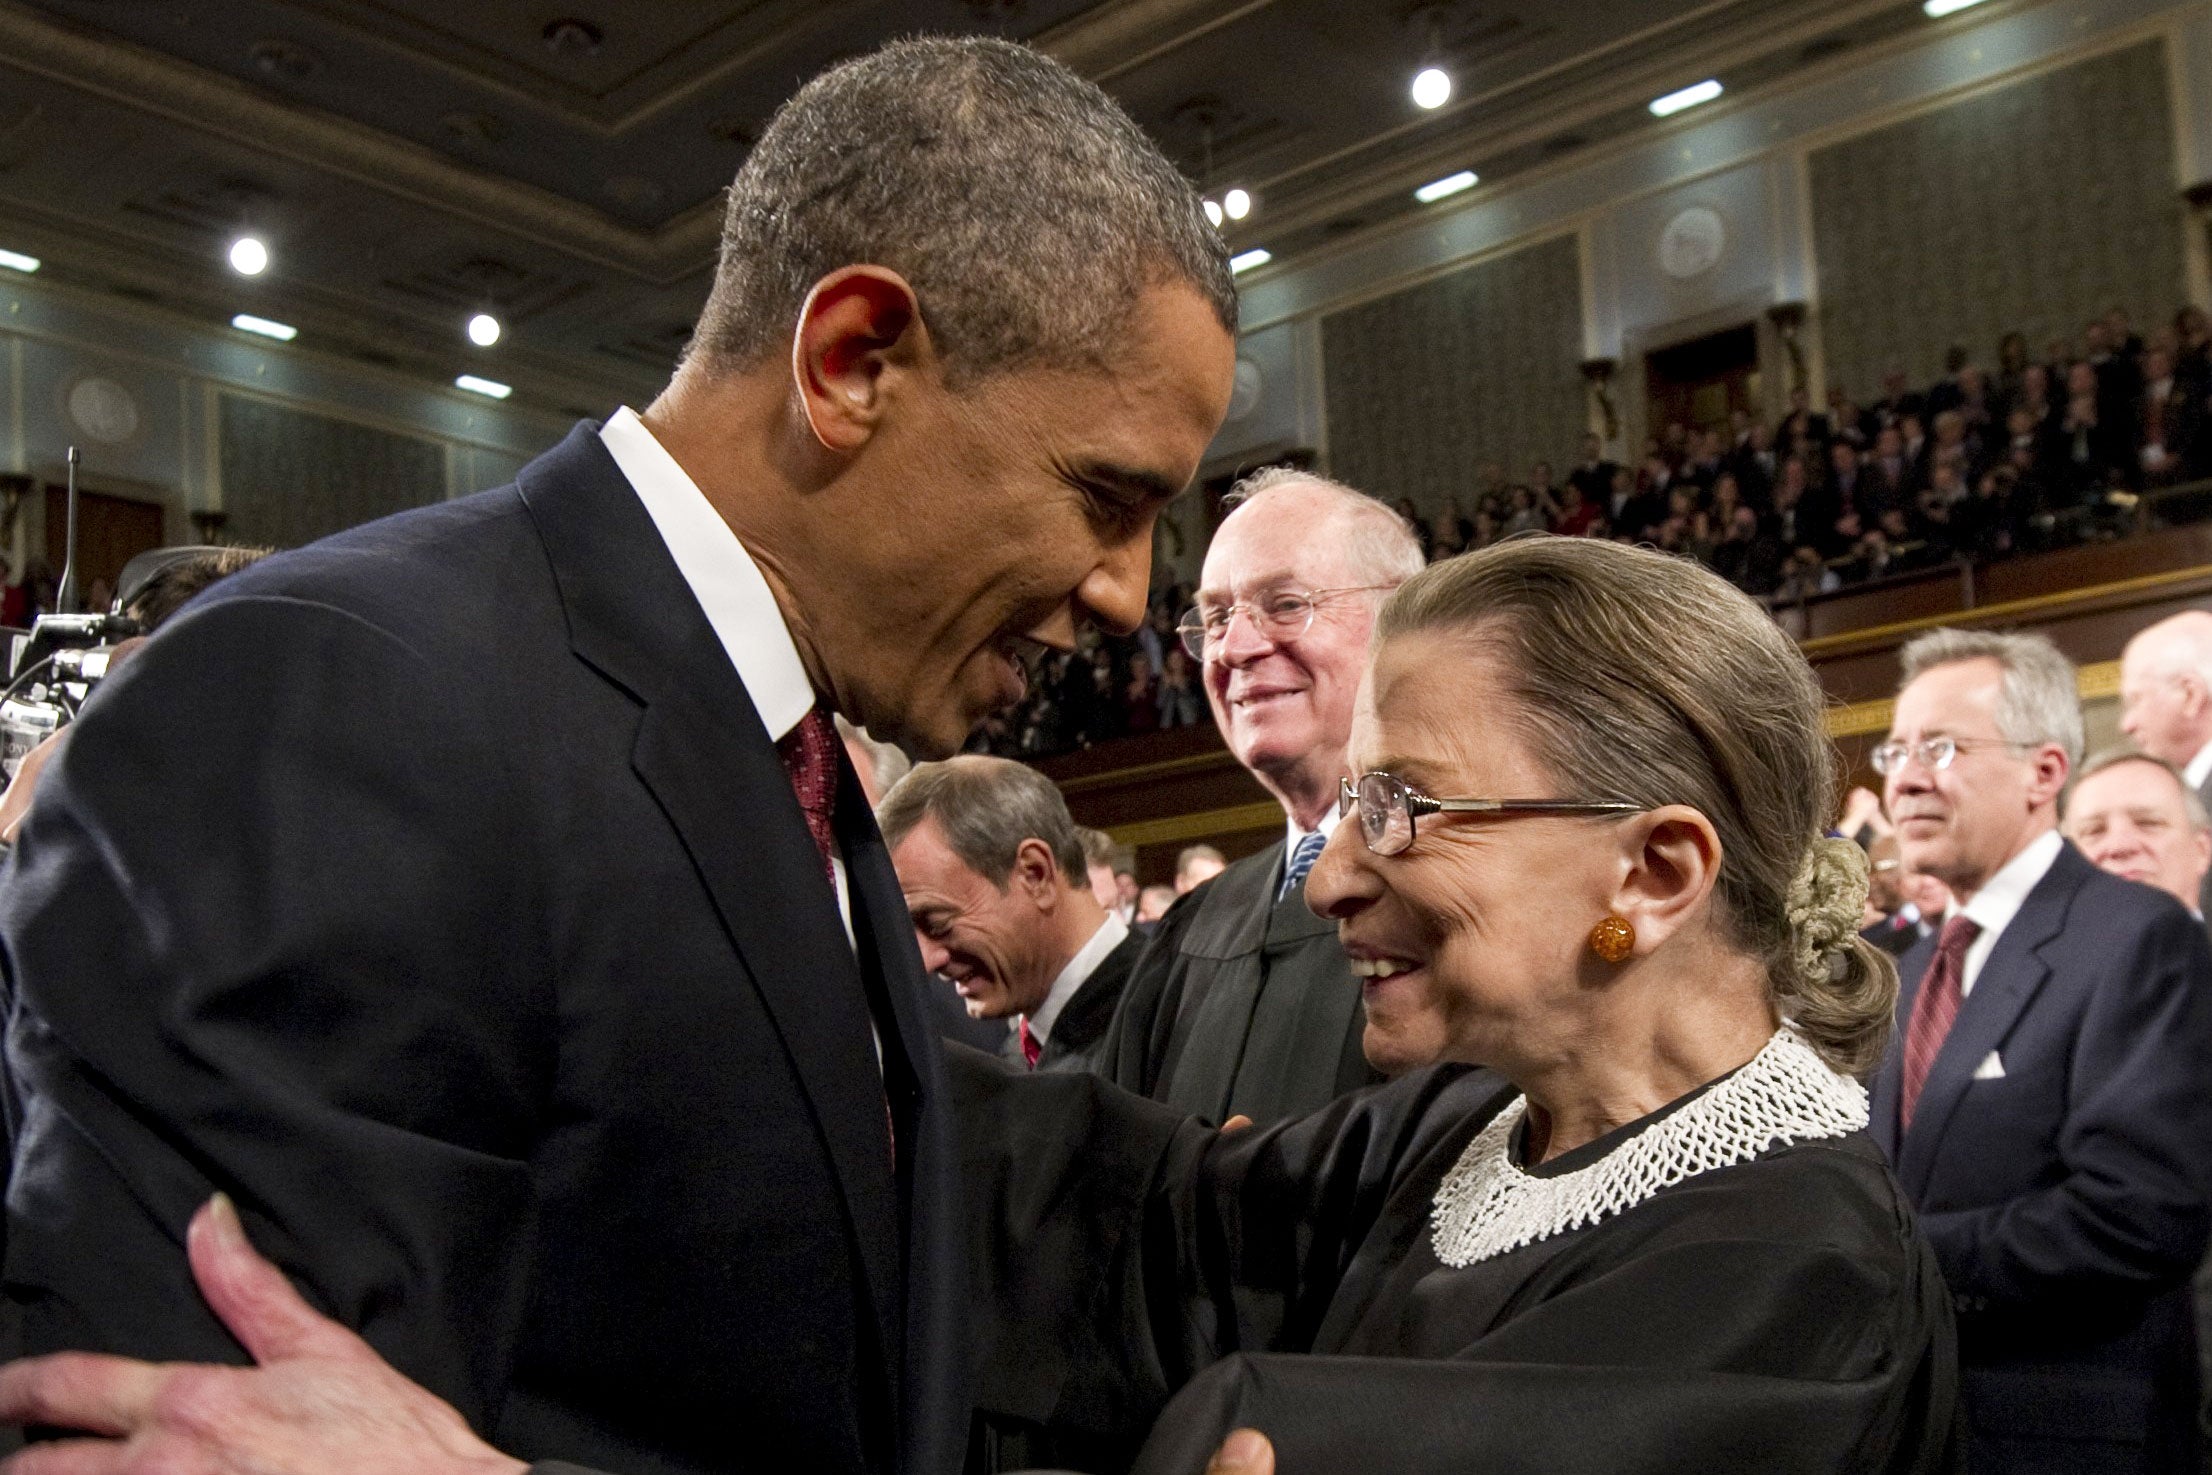 President Barack Obama greets Supreme Court Justice Ruth Bader Ginsburg.